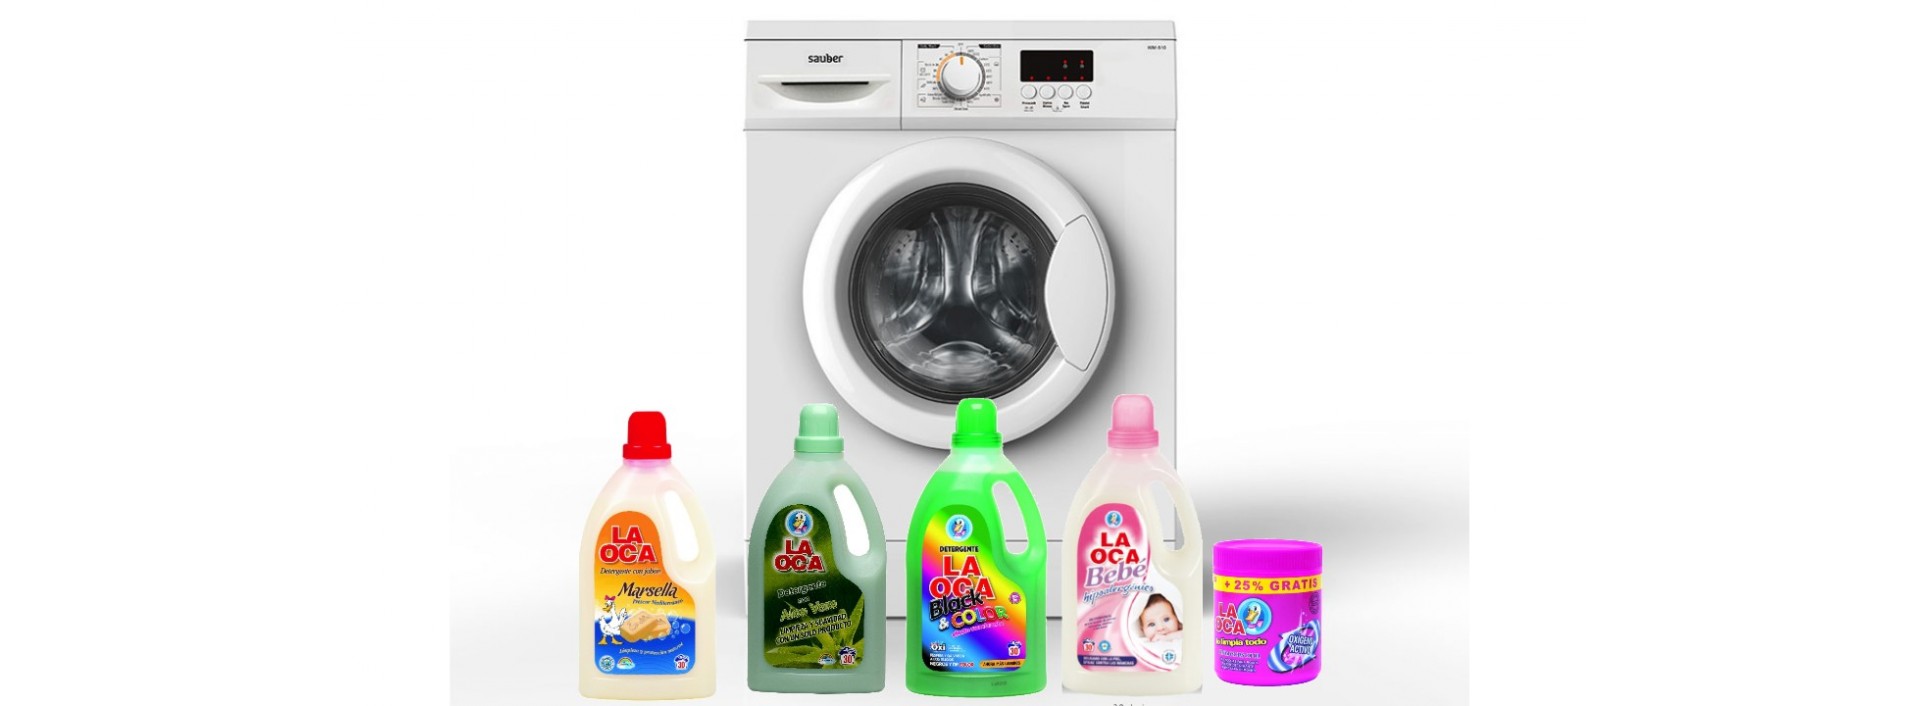 Ariel Detergente lavadora liquido capsulas actilift ropa color y